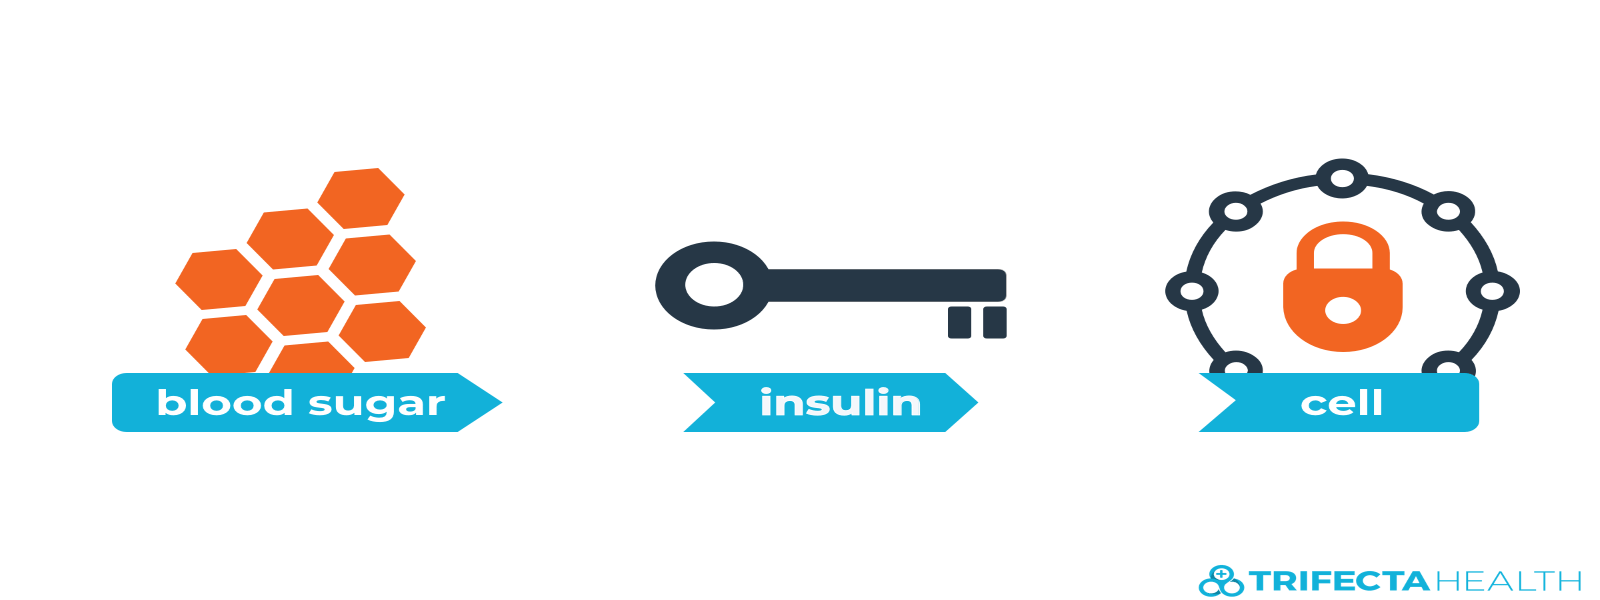 insulin_glucose_diabetes-2